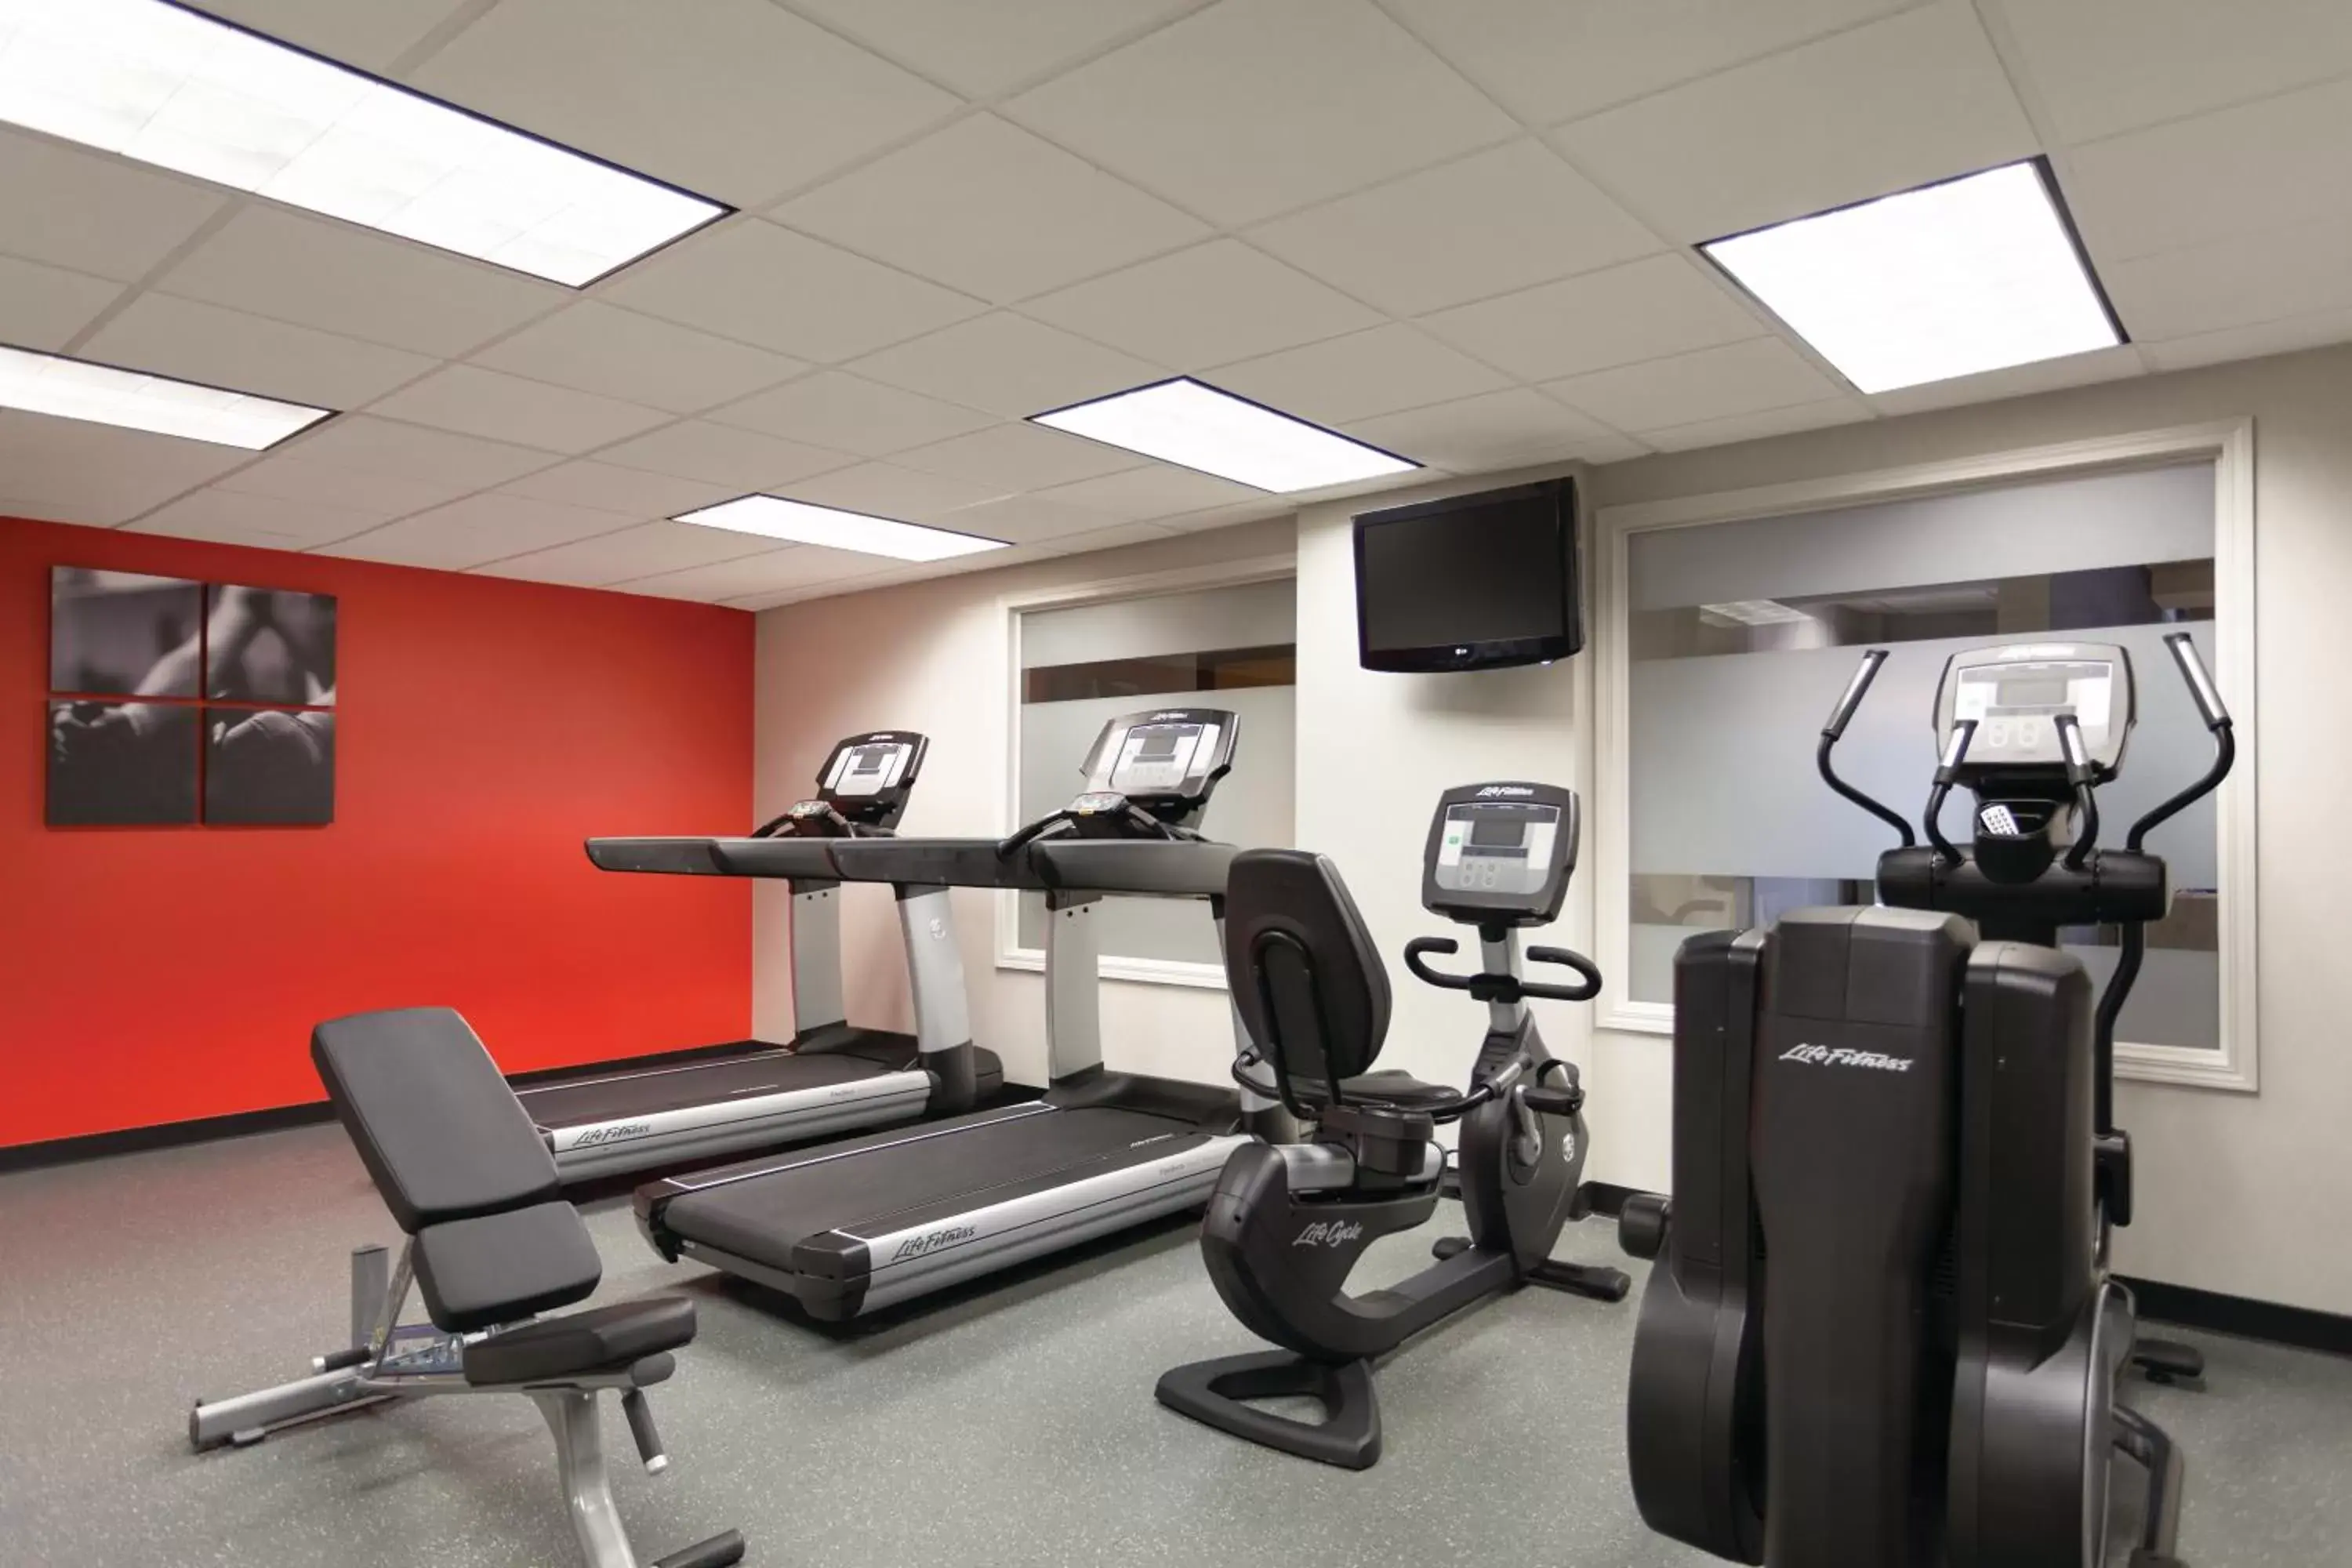 Fitness centre/facilities, Fitness Center/Facilities in Radisson Dallas North-Addison